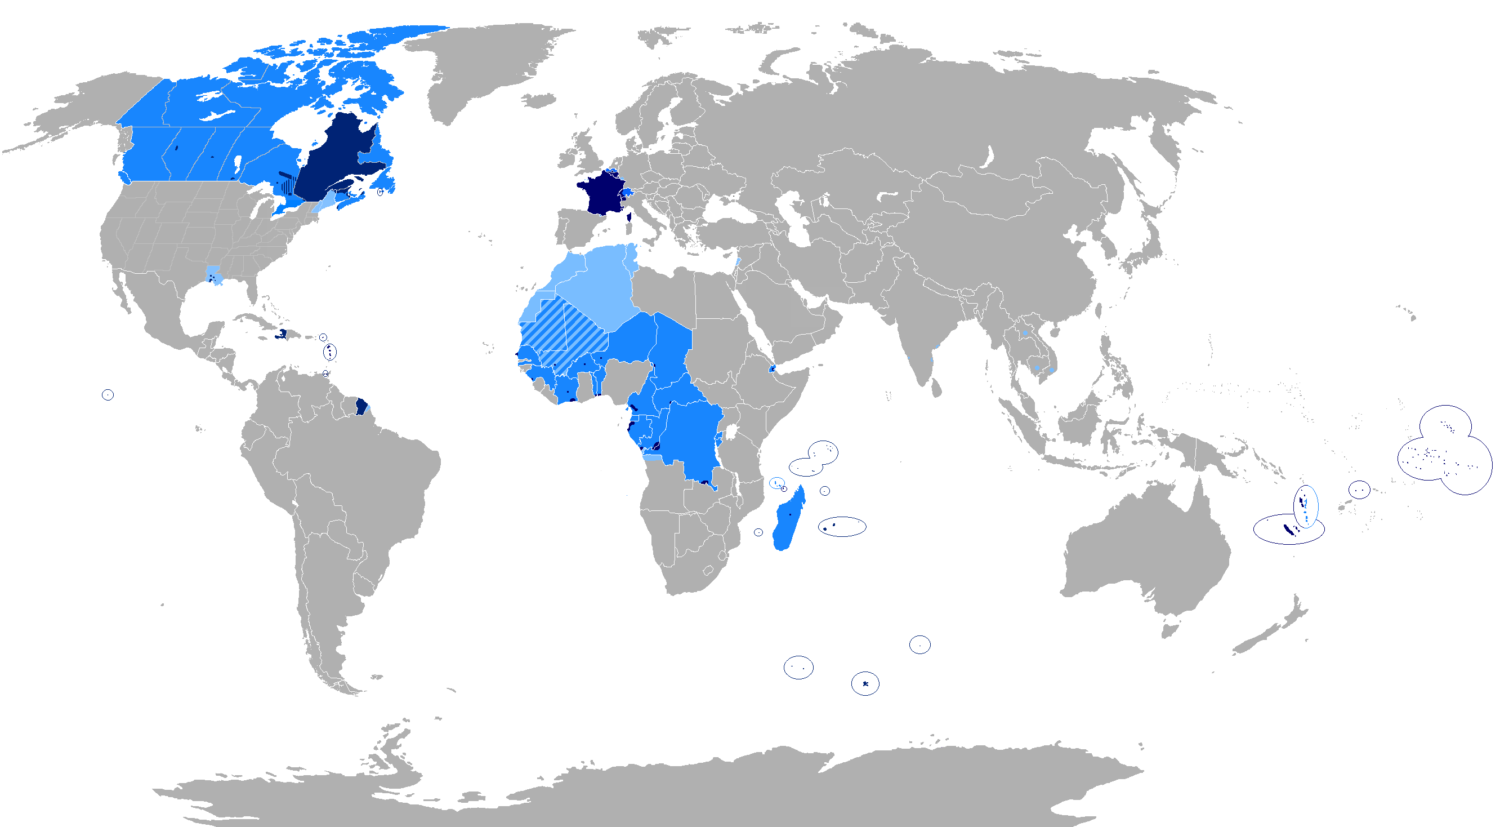 Une carte du monde représentant les pays en gris et les océan en blanc. La France, le Québec et la Guyane française sont dessinés en bleu foncé. Le canada et plusieurs pays d'Afrique centrale ainsi que le Madagascar sont dessinés en bleu moyen. Plusieurs pays d'Afrique du Nord sont dessinés en bleu pâle, de même que la Louisiane aux États-Unis. Finalement, la Mauritanie et le Mali sont en bleu rayé. Quelques îles réparties dans divers océan sont aussi dessinées en différents tons de bleu, mais les détails sont trop petits pour que les pays exacts soient déterminés. 